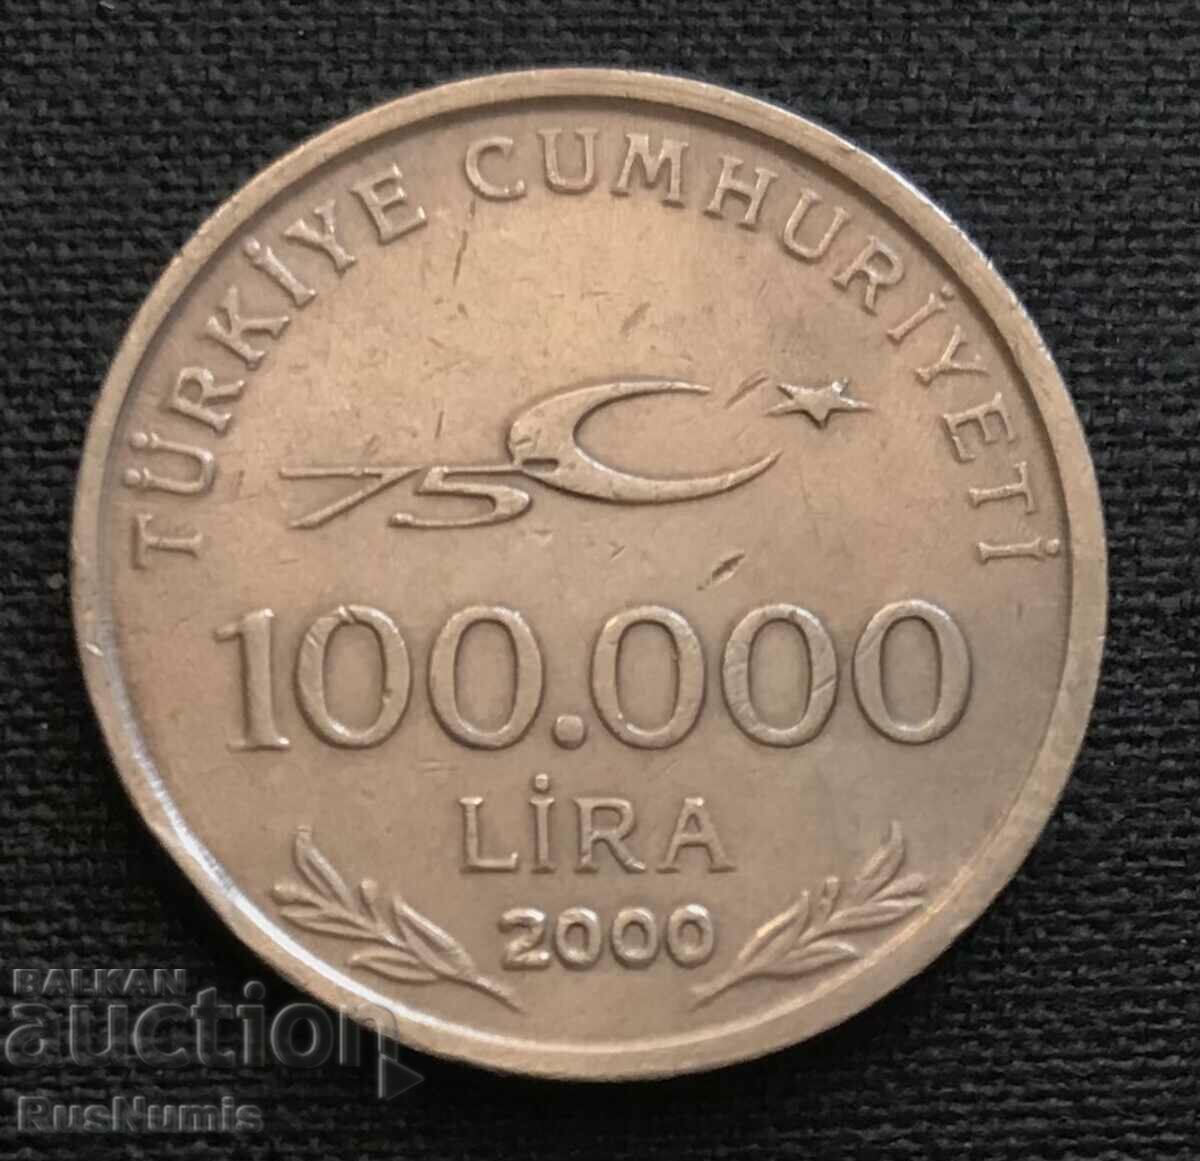 Turkey. 100,000 pounds 2000